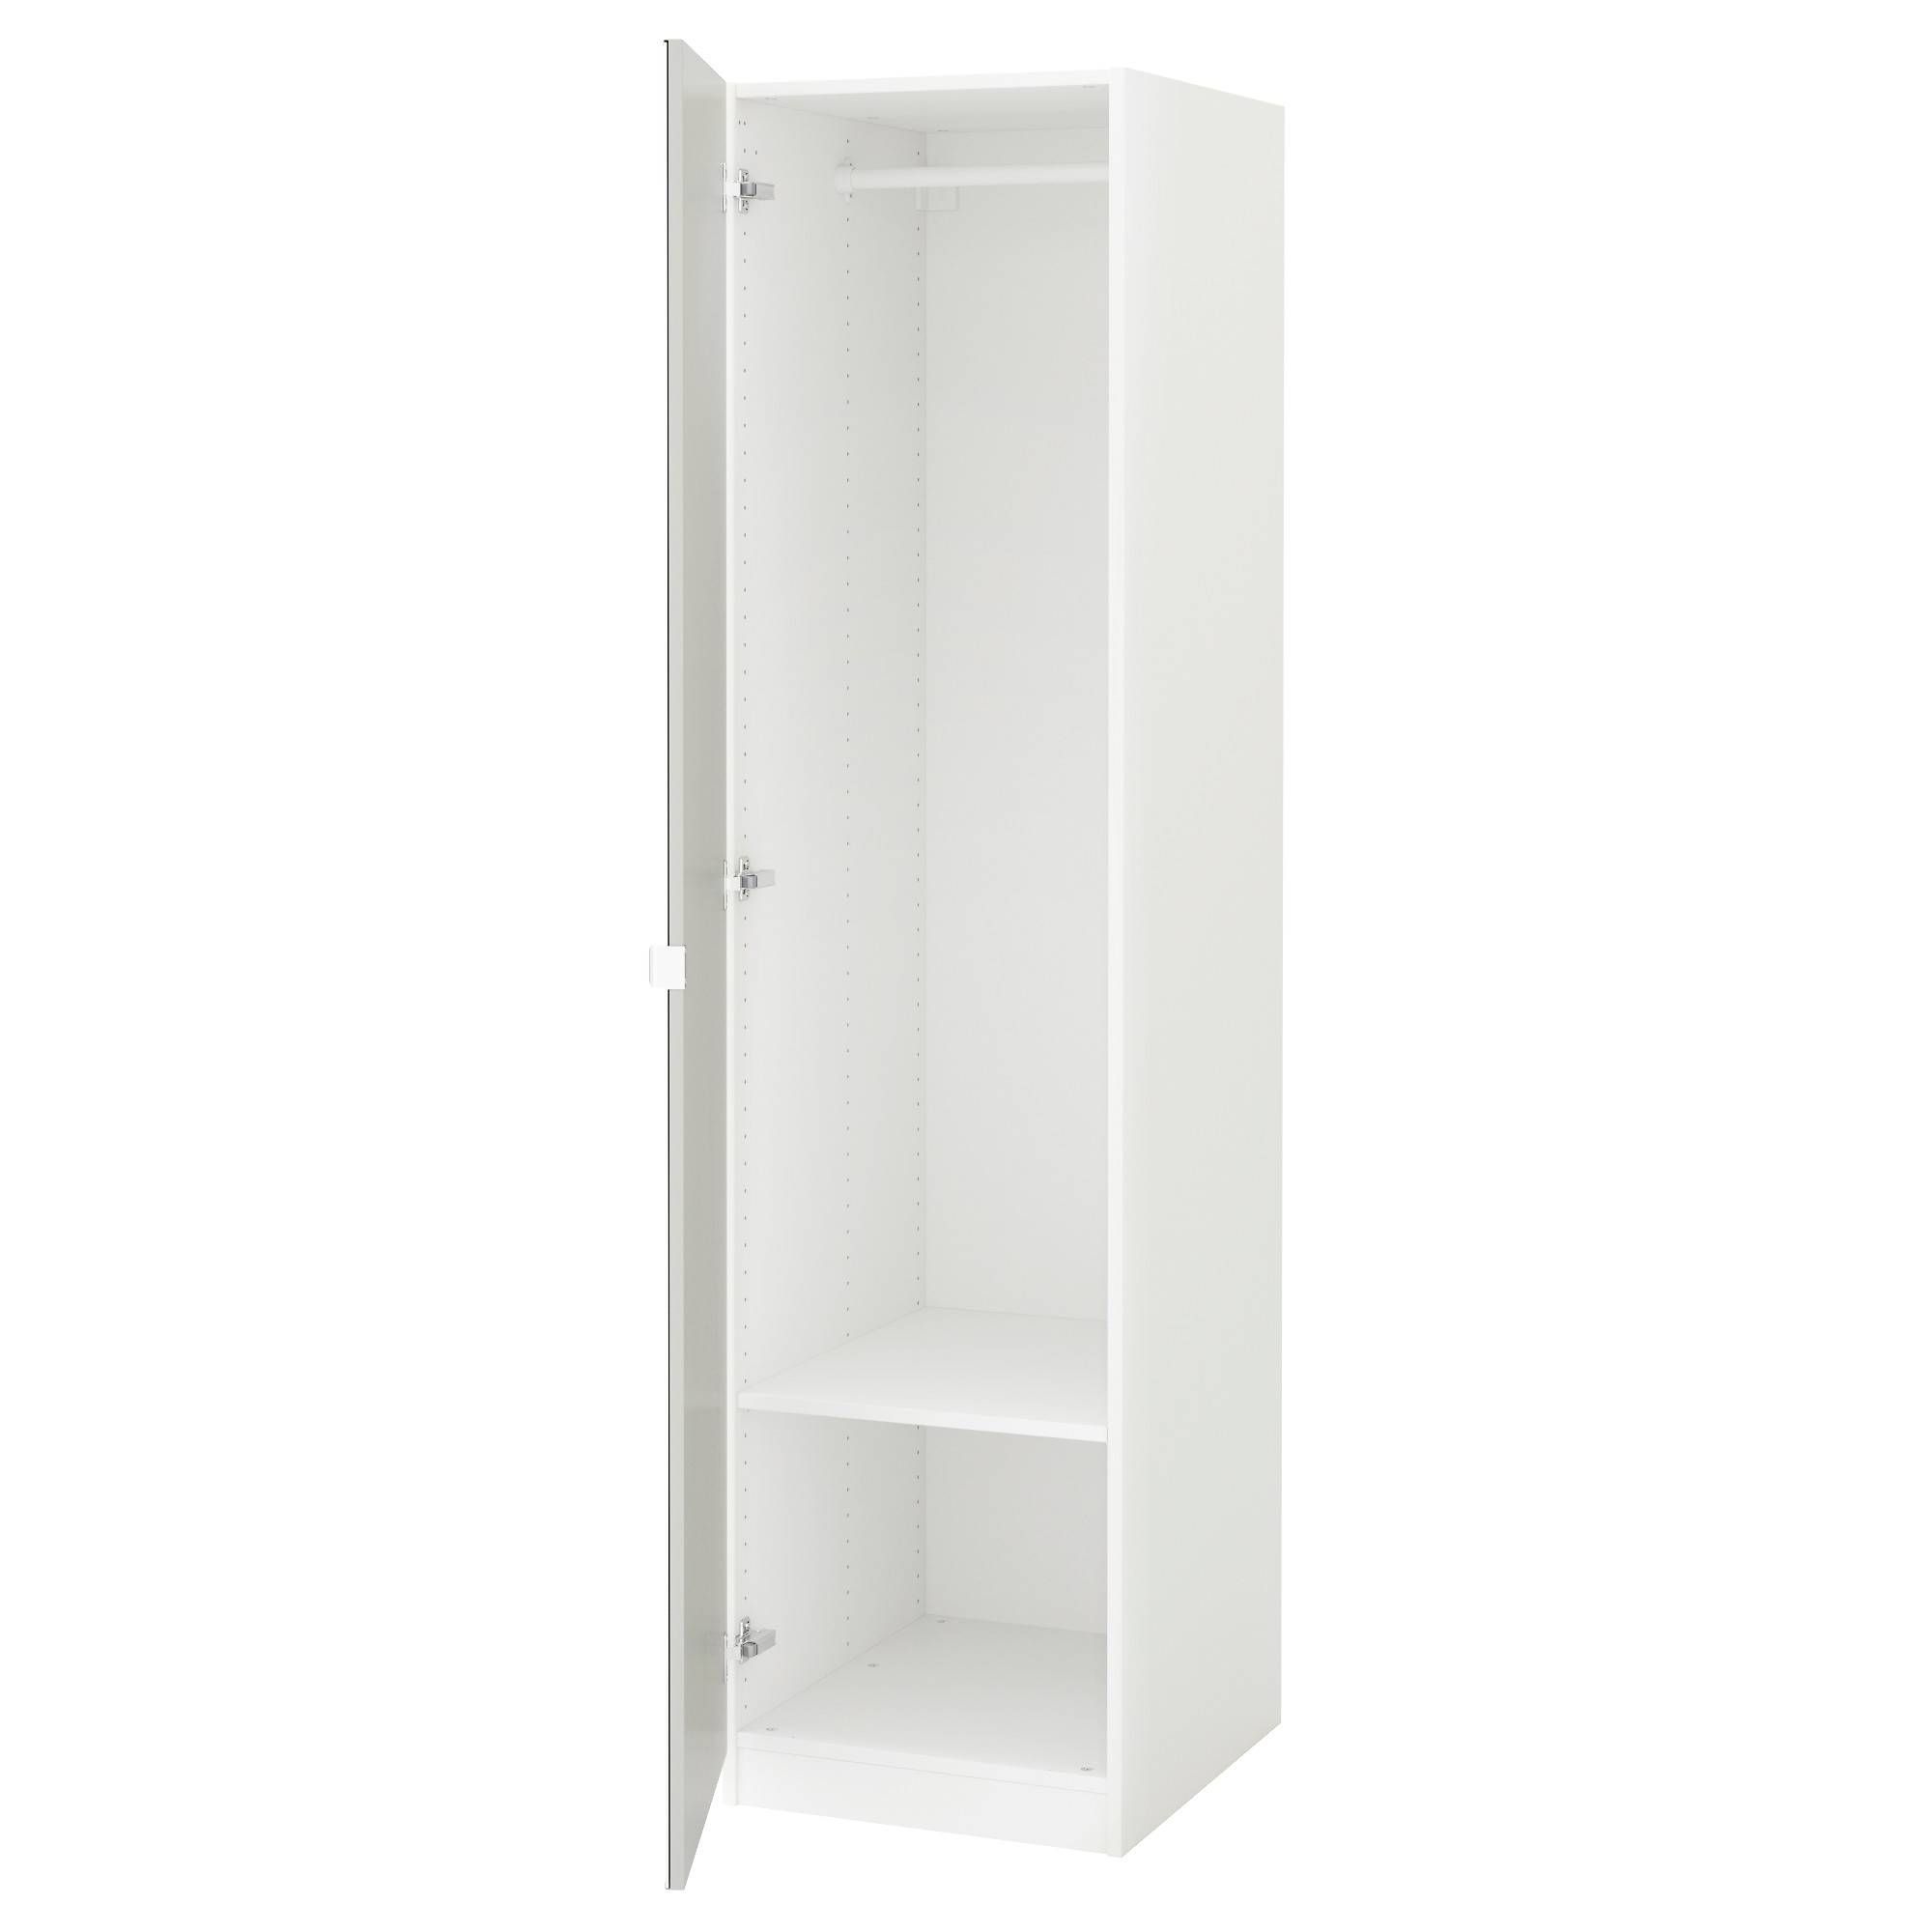 Pax Wardrobe White/vikedal Mirror Glass 50x60x201 Cm – Ikea With Regard To Single White Wardrobes (Photo 1 of 15)